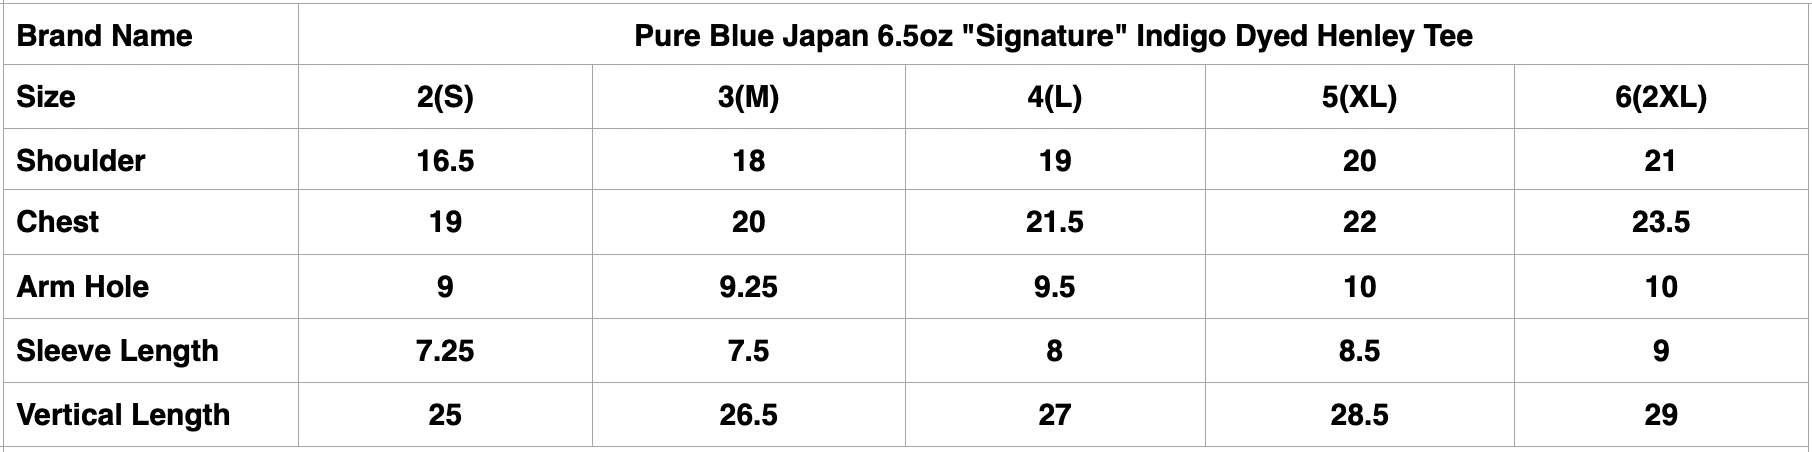 Pure Blue Japan 6.5oz "Signature" Indigo Dyed Henley Tee (Genuine Indigo)